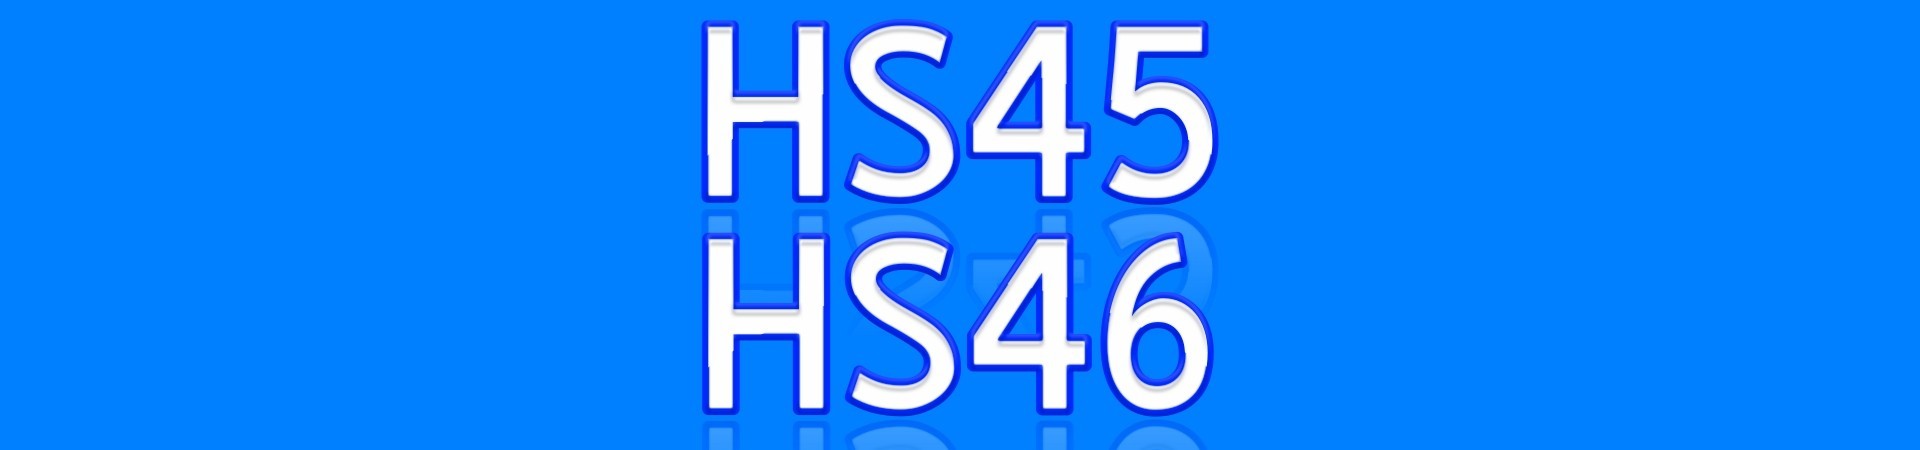 HS45 HS46